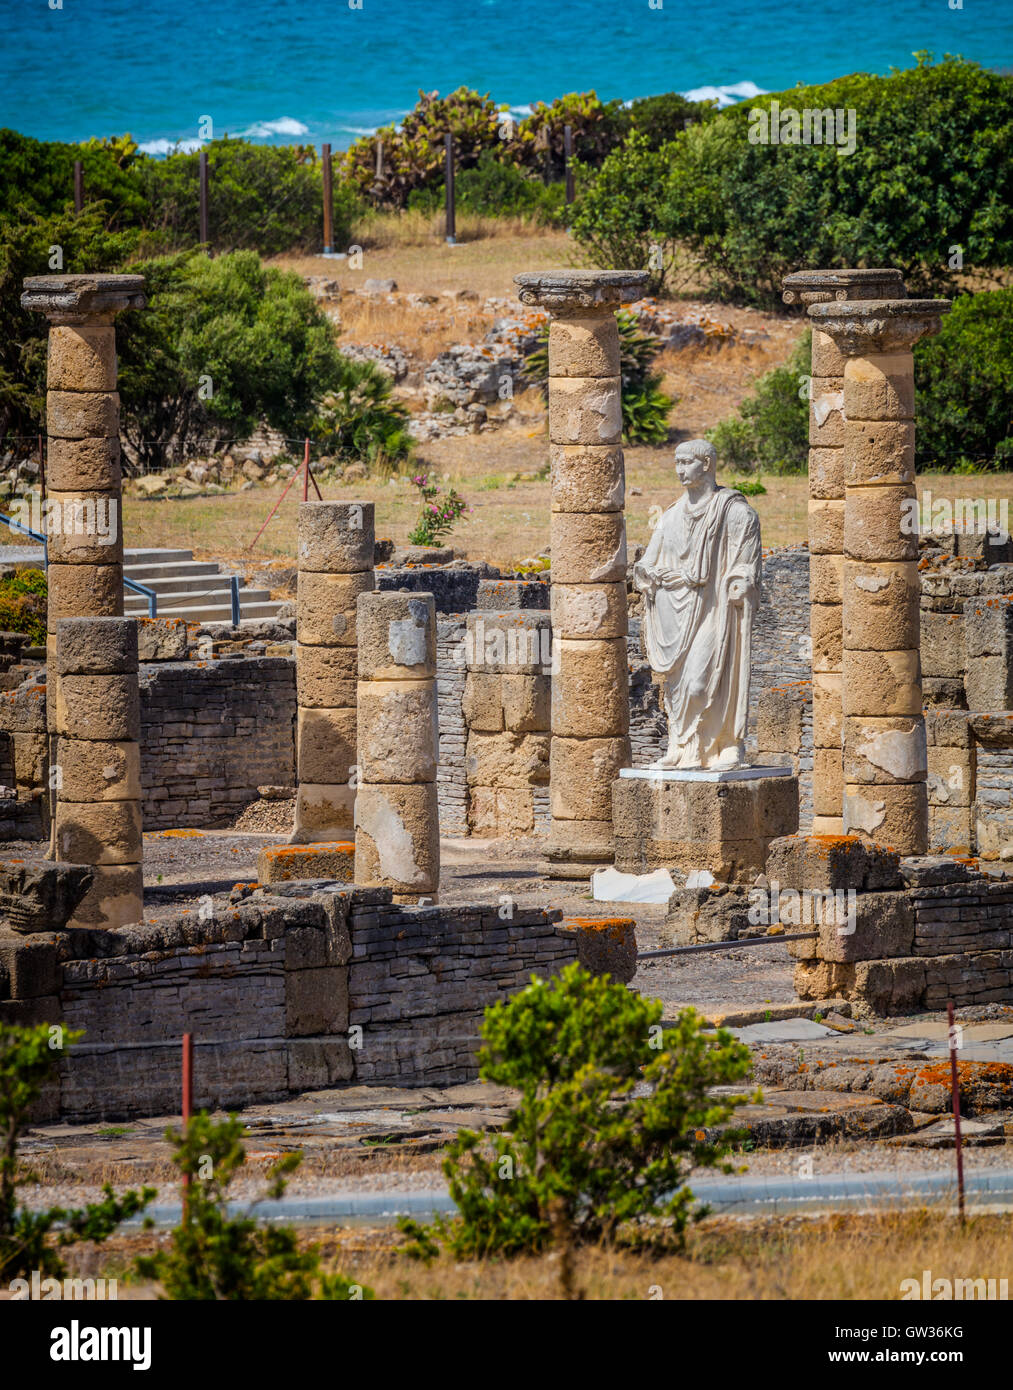 Le rovine romane di Baelo Claudia a Bolonia, la provincia di Cadiz Cadice, Costa de la Luz, Spagna. La statua dell'imperatore Traiano nella Basilica Foto Stock